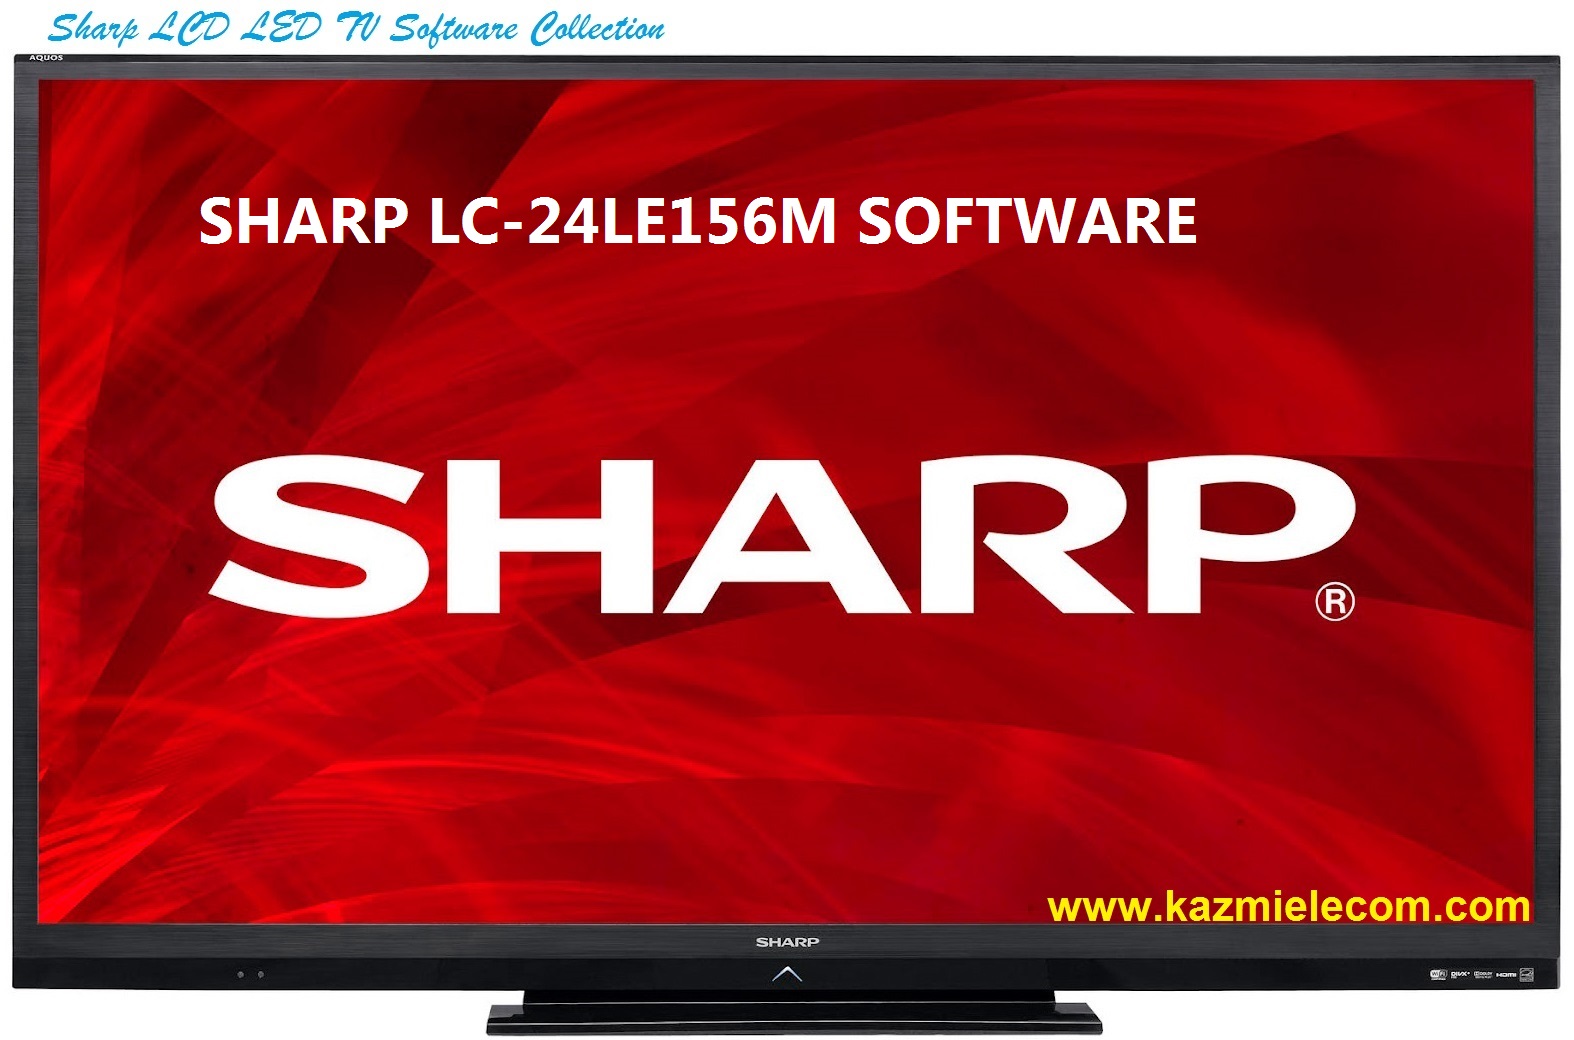 Sharp Lc-24Le156M